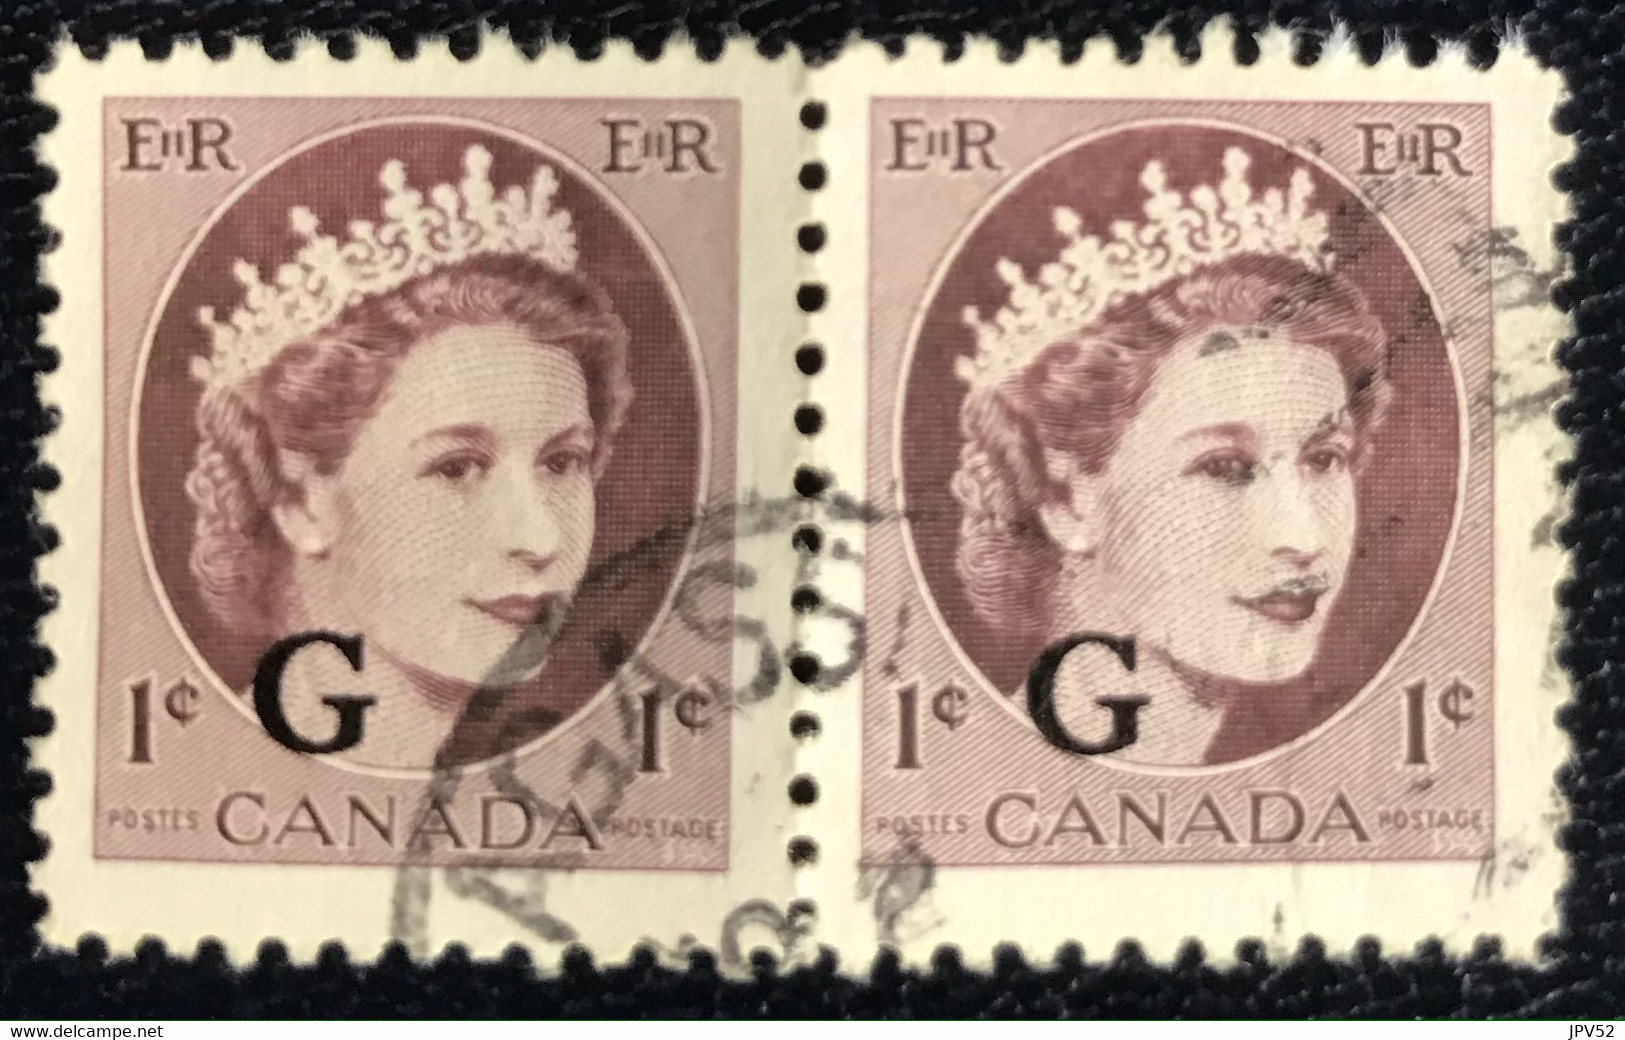 Canada - P5/45 - (°)used - 1956 - Michel 46 - Koningin Elizabeth II - Aufdrucksausgaben